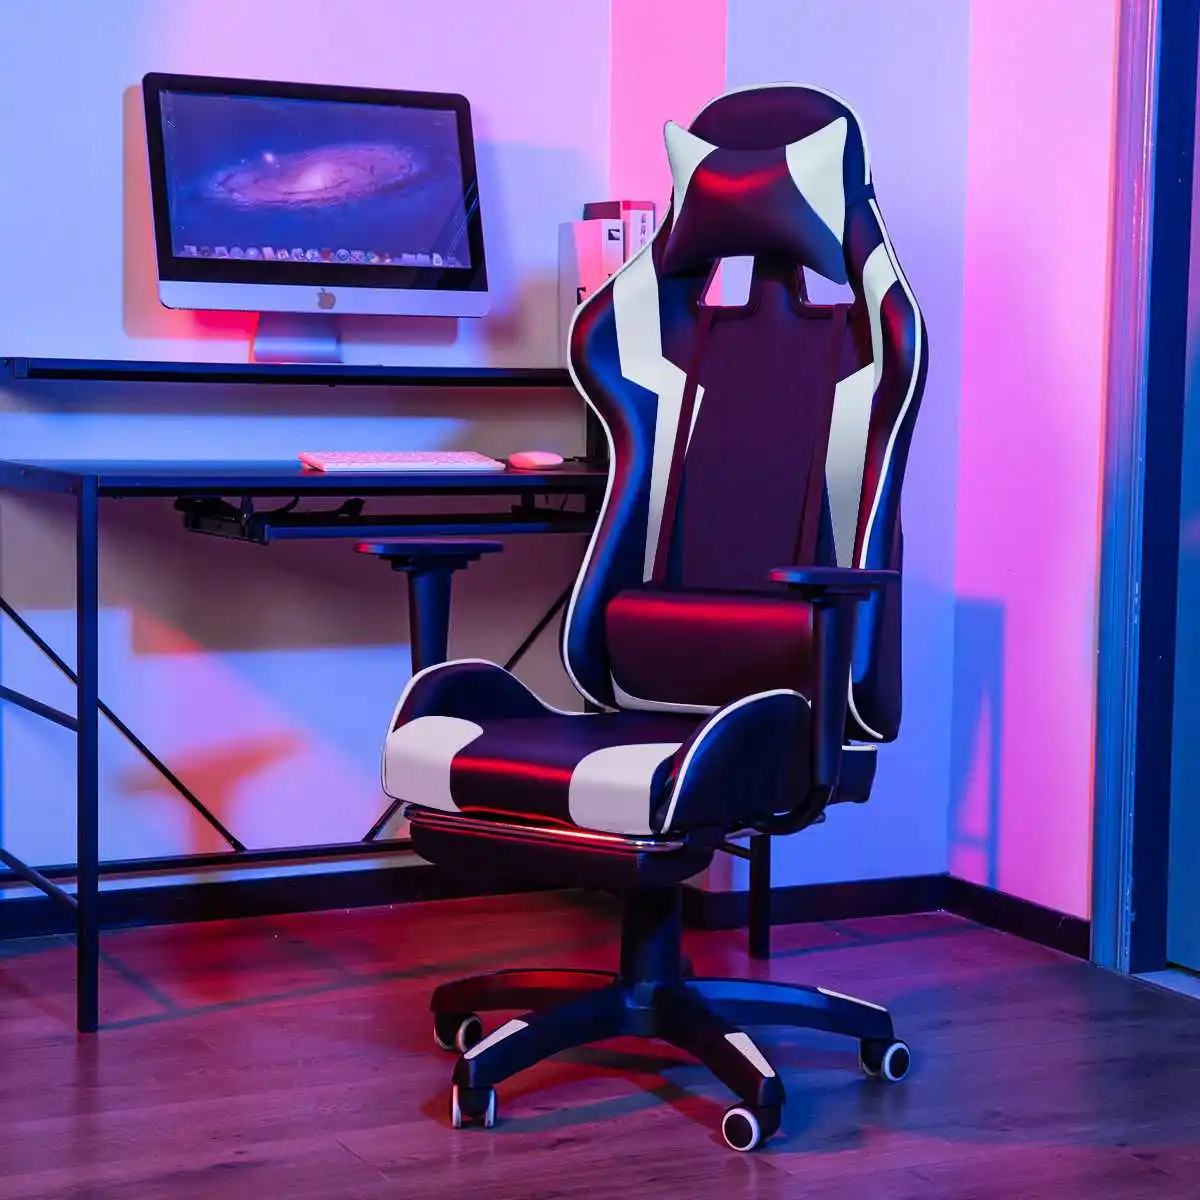 

Игровое кресло, эргономичное кресло для дома и офиса, компьютерное кресло, удобное кресло, кожаное кресло с откидывающейся спинкой для игр